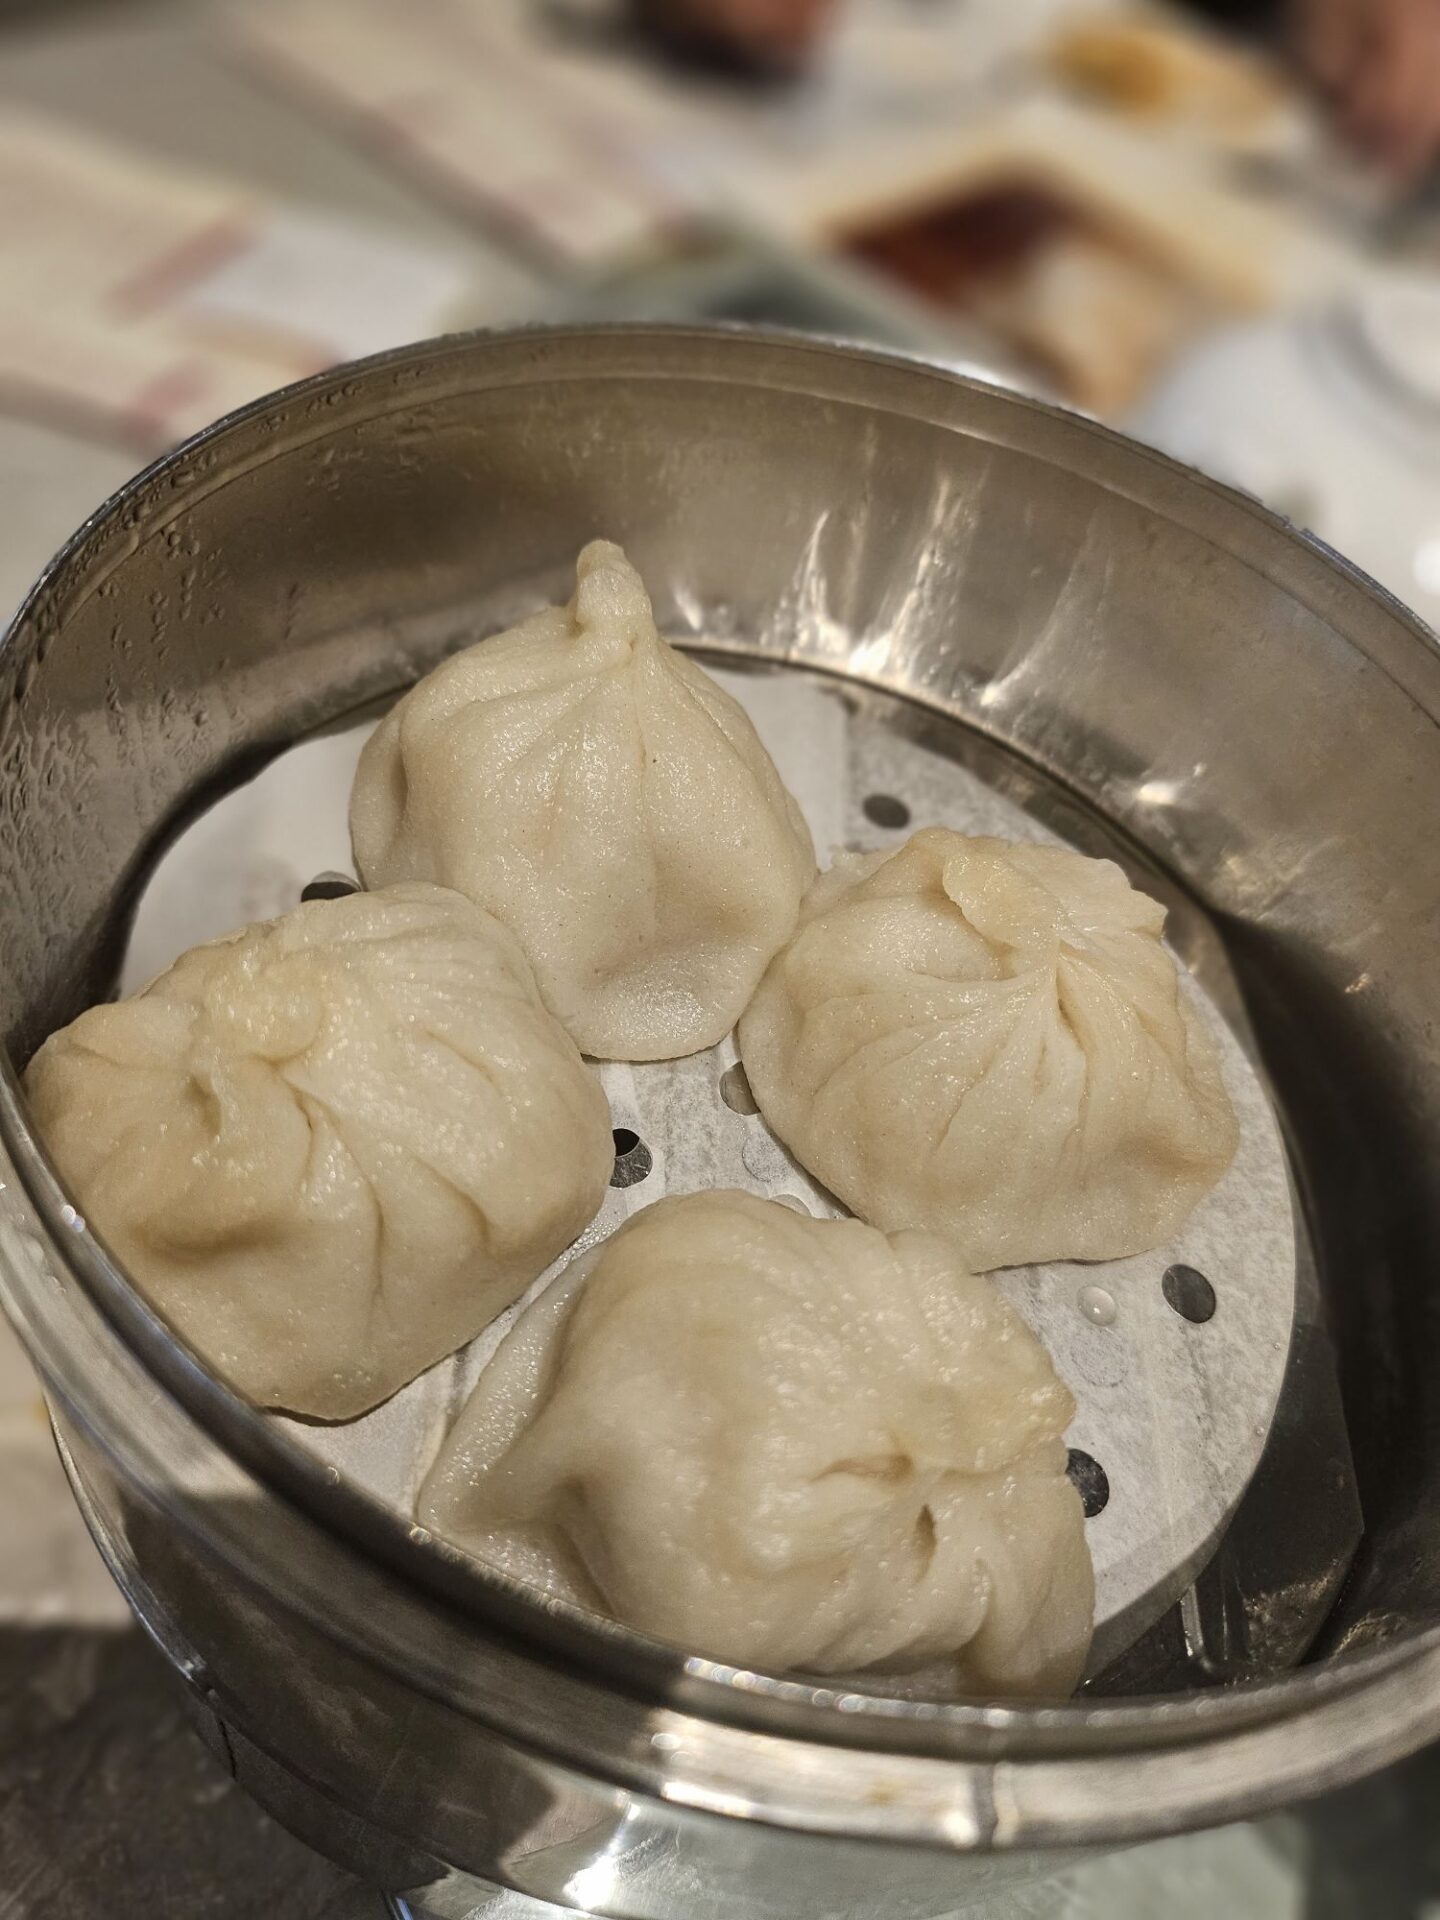 dumplings in a steamer